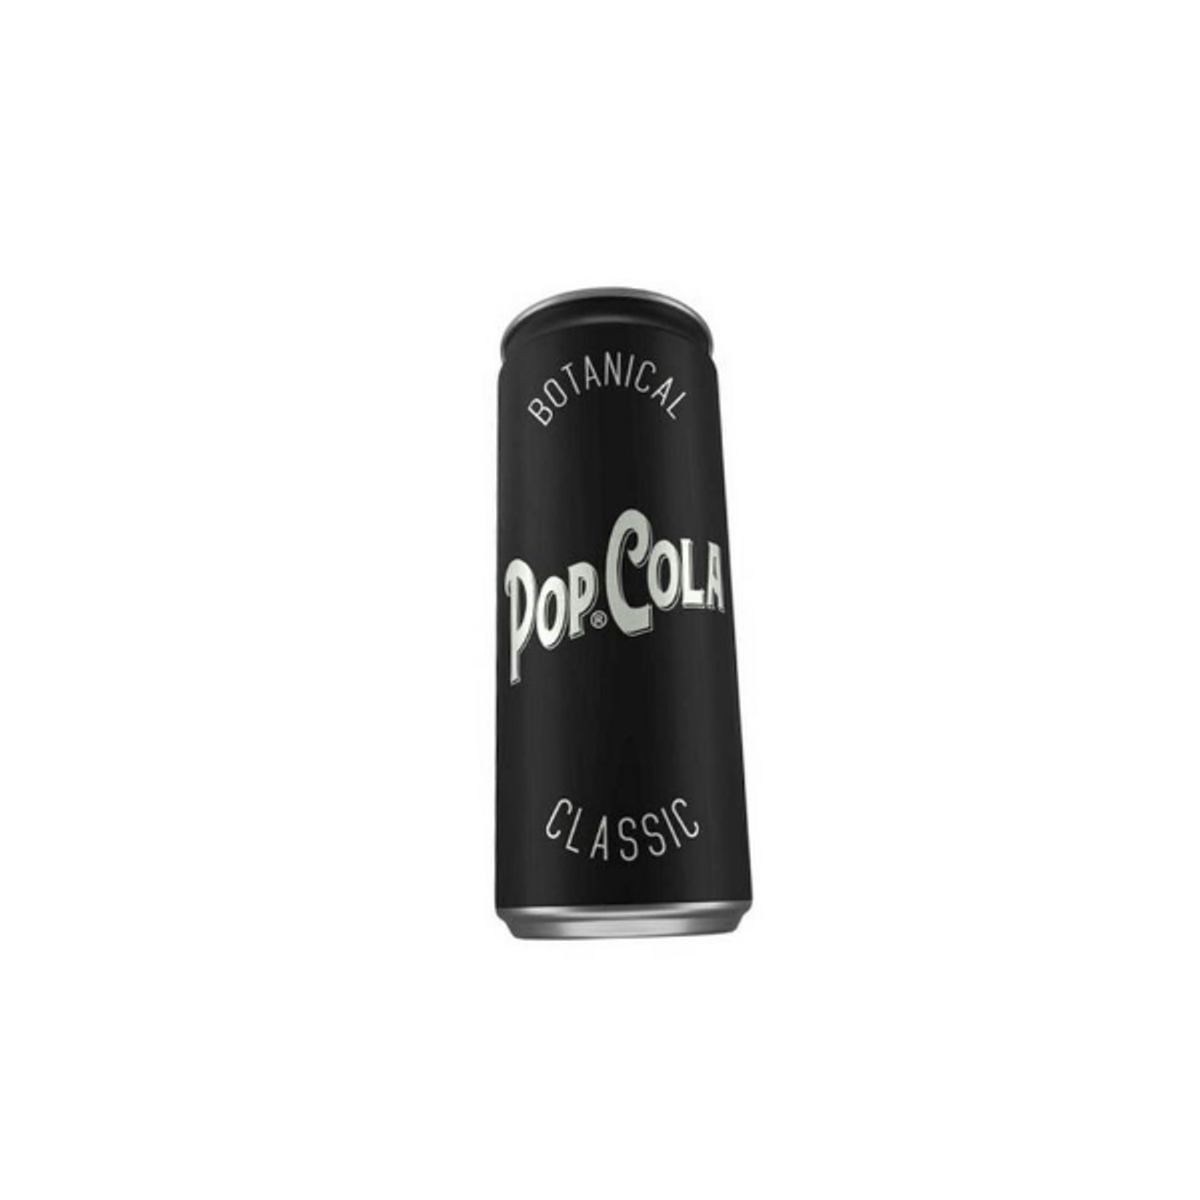 Pop Cola Clasic 